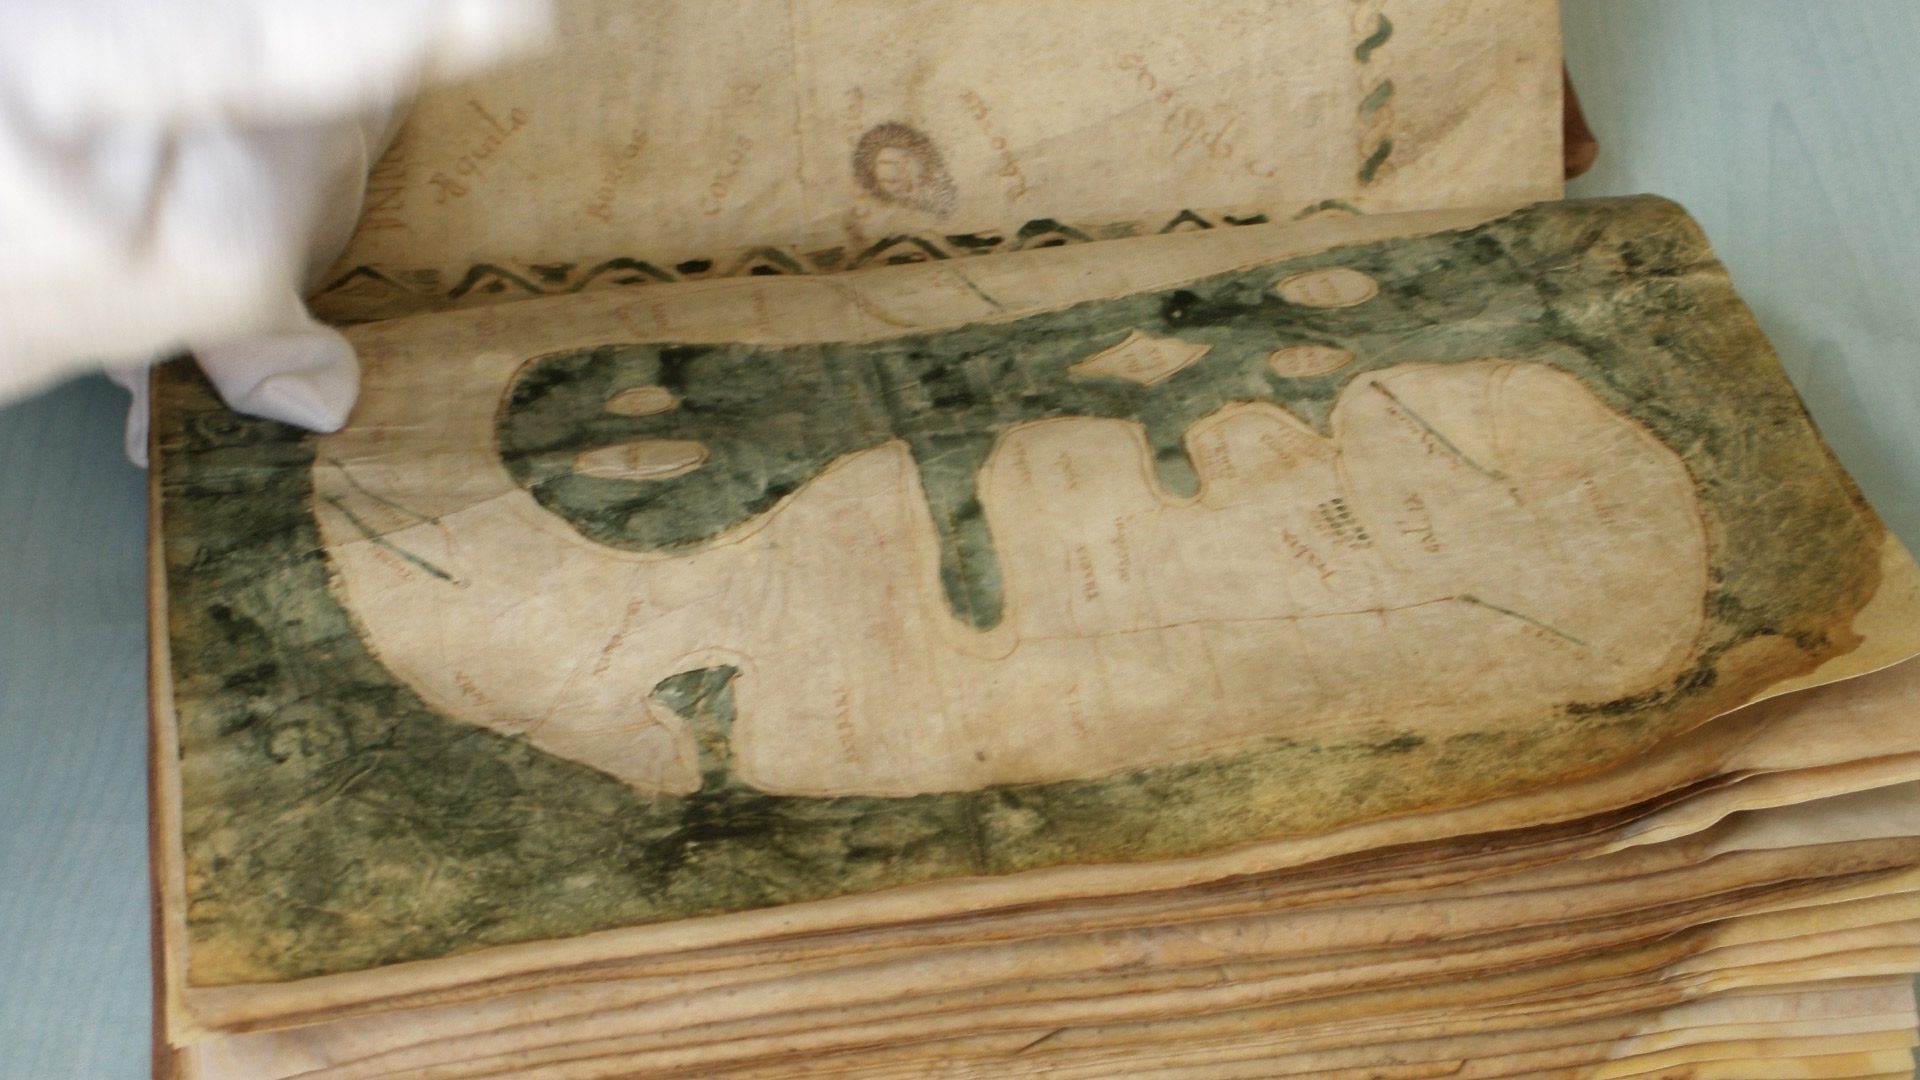 De Mappa Mundi van Albi, middeleeuwse kaart uit de 8e eeuw, geregistreerd in het Memory of the World-register van UNESCO